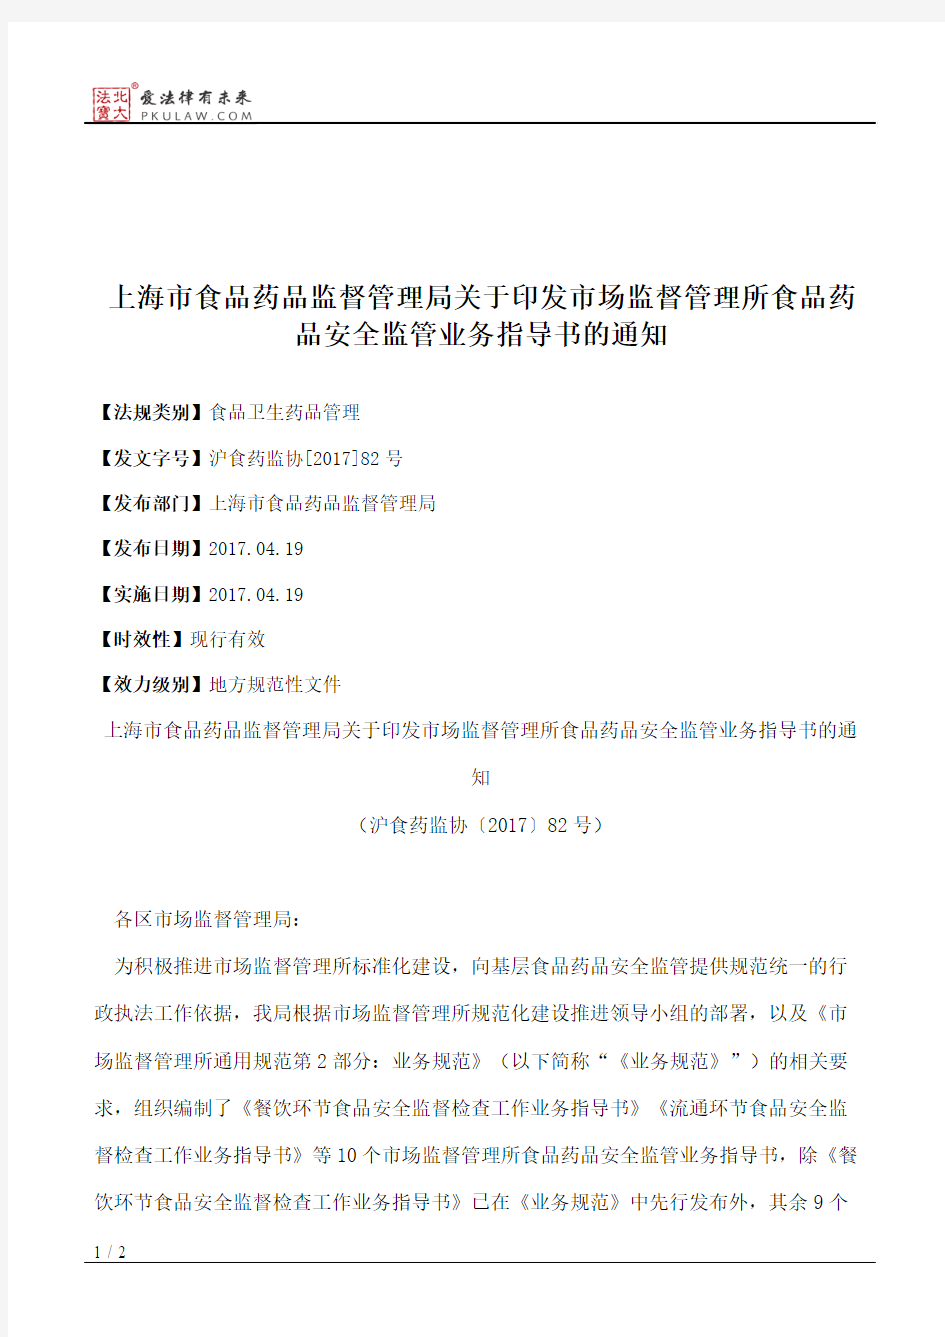 上海市食品药品监督管理局关于印发市场监督管理所食品药品安全监